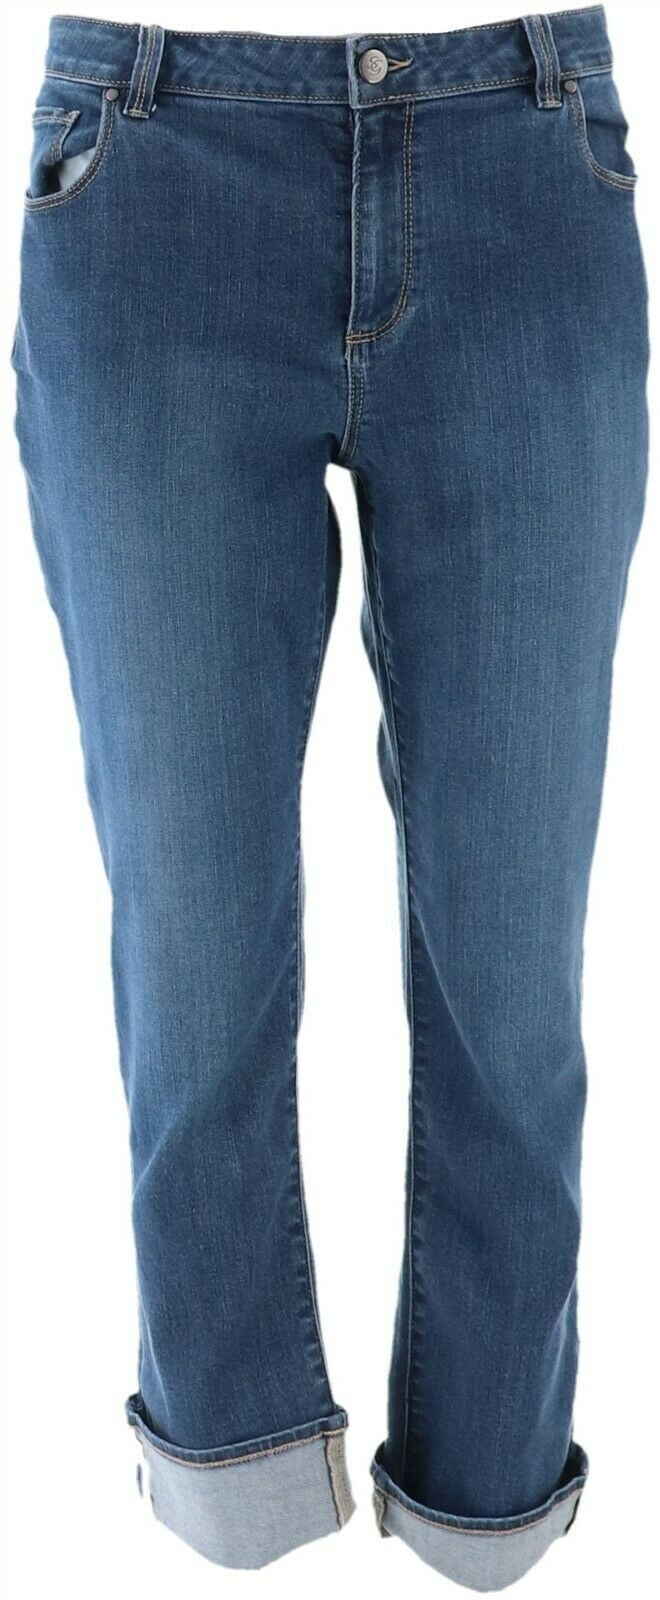 Susan Graver - Susan Graver Petite Denim Cuffed Ankle Jeans Women's ...